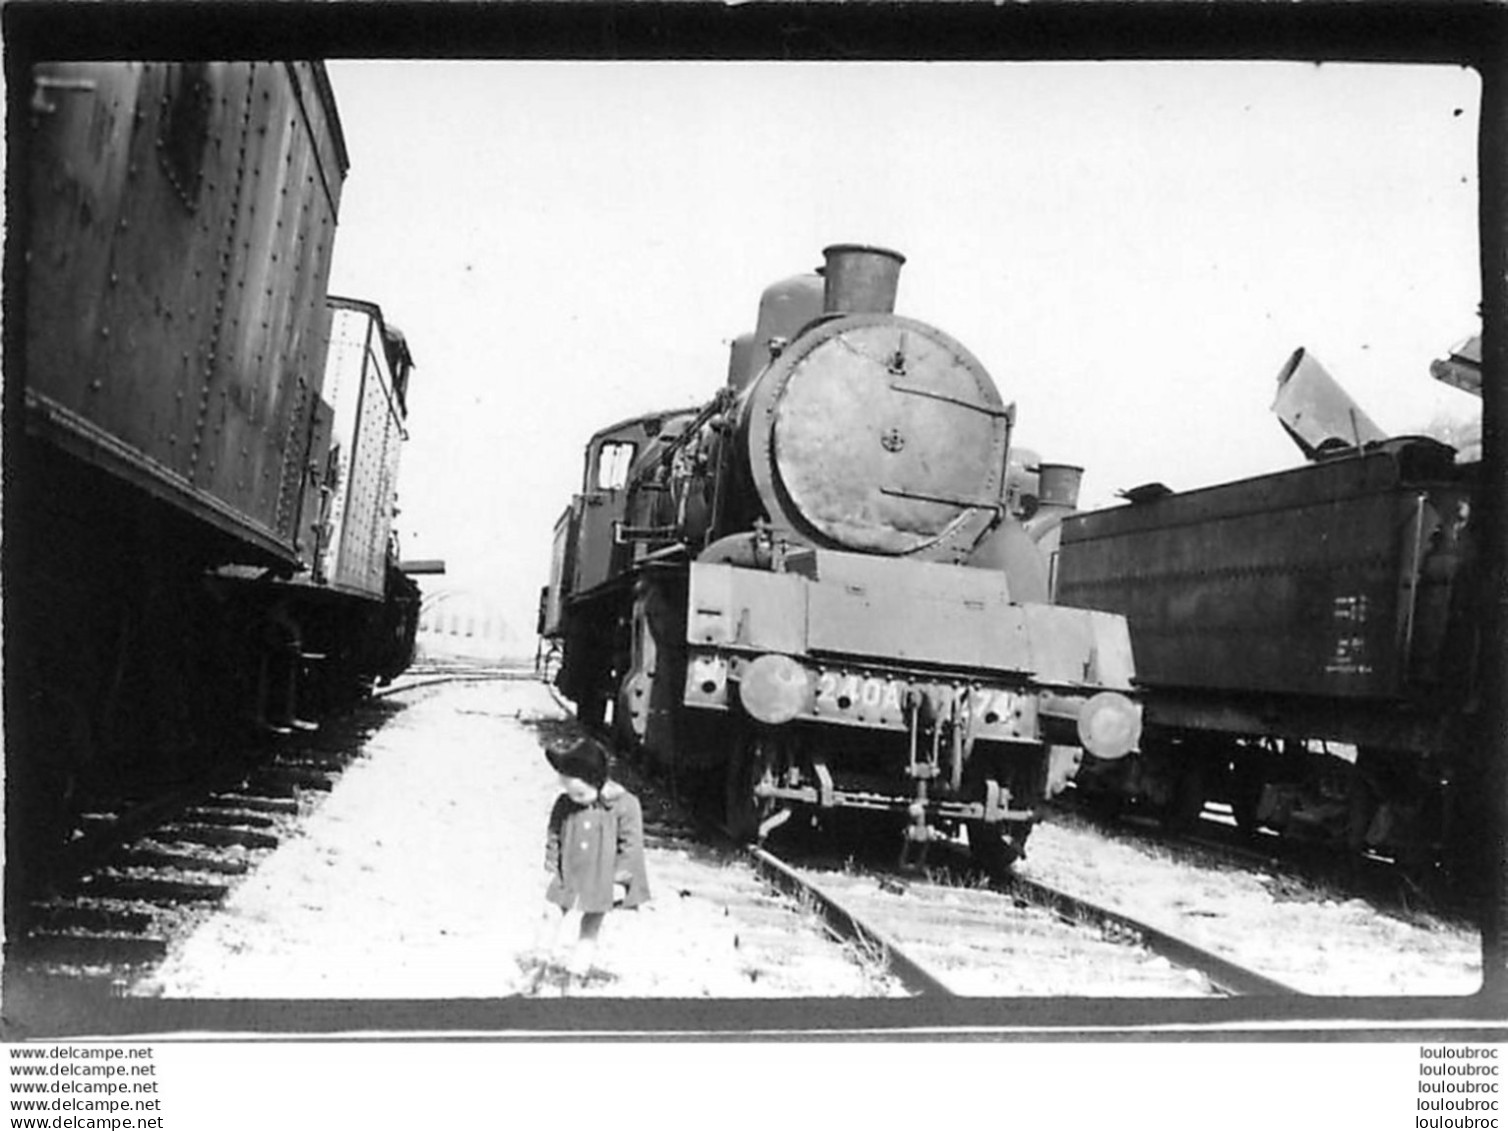 TRAIN MACHINE 240-A  PHOTO ORIGINALE 9 X 6 CM - Eisenbahnen